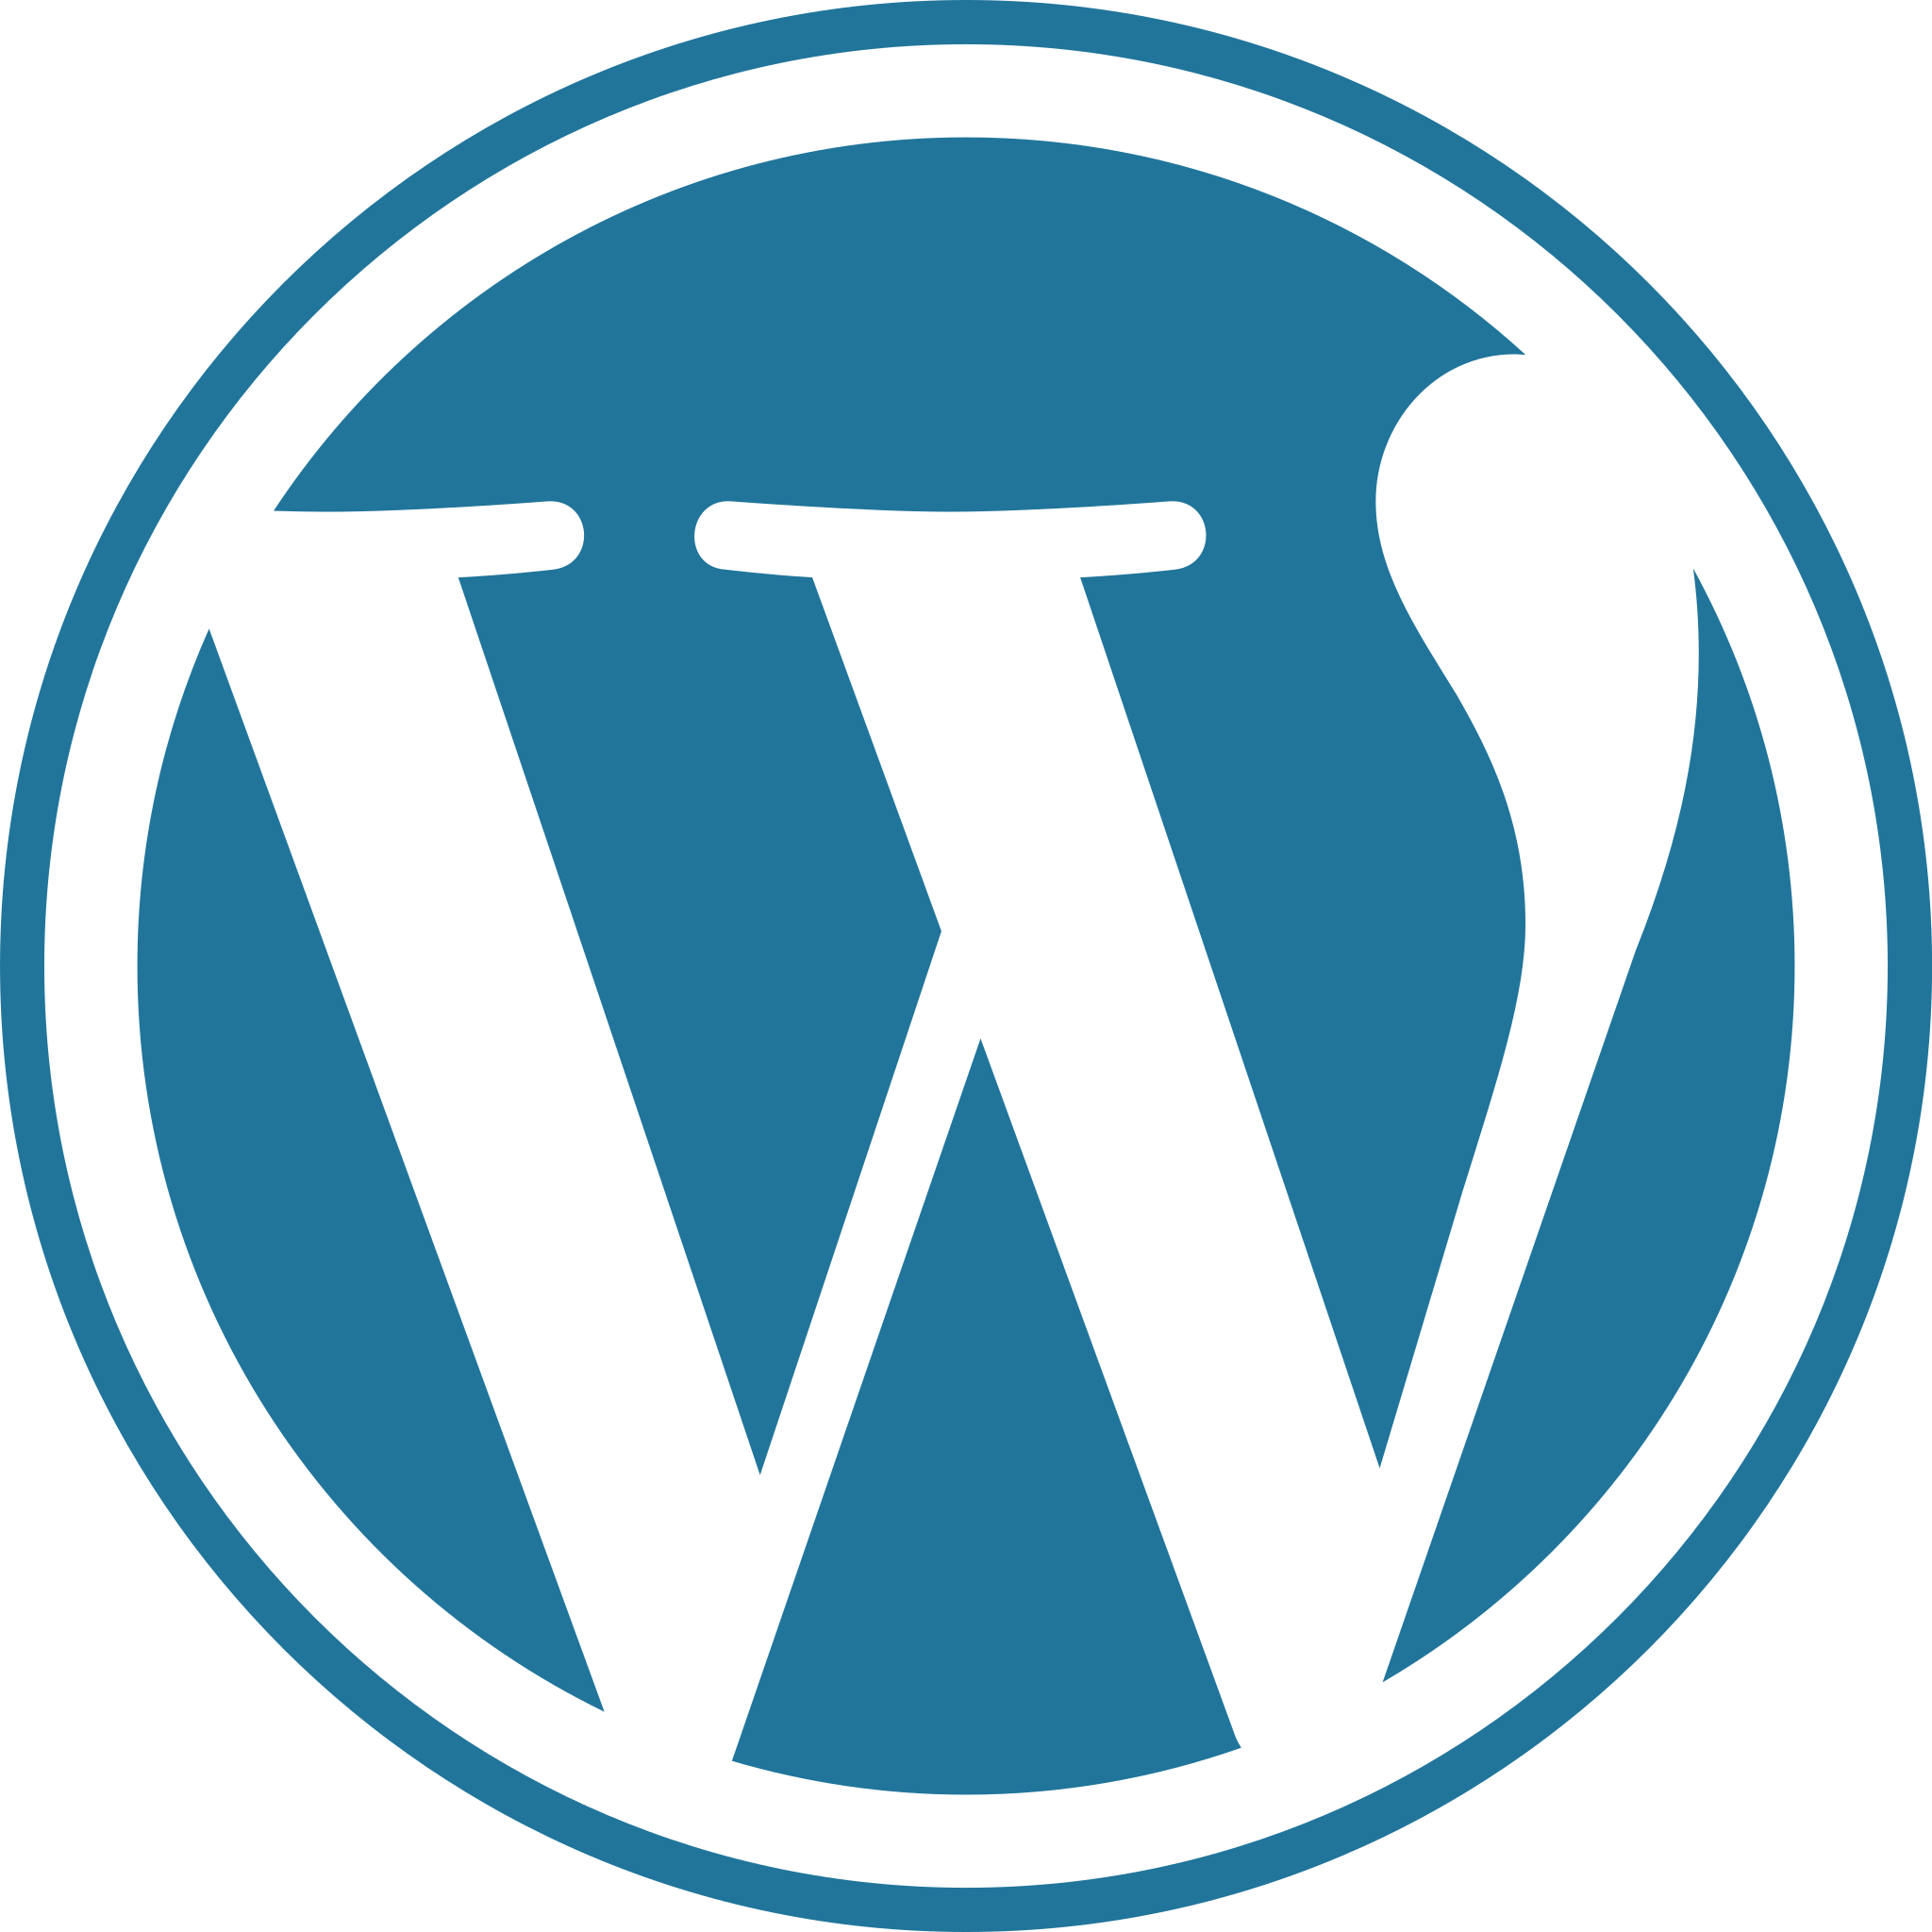 Setzen Sie auf Spitzenleistung mit unserer professionellen WordPress-Agentur